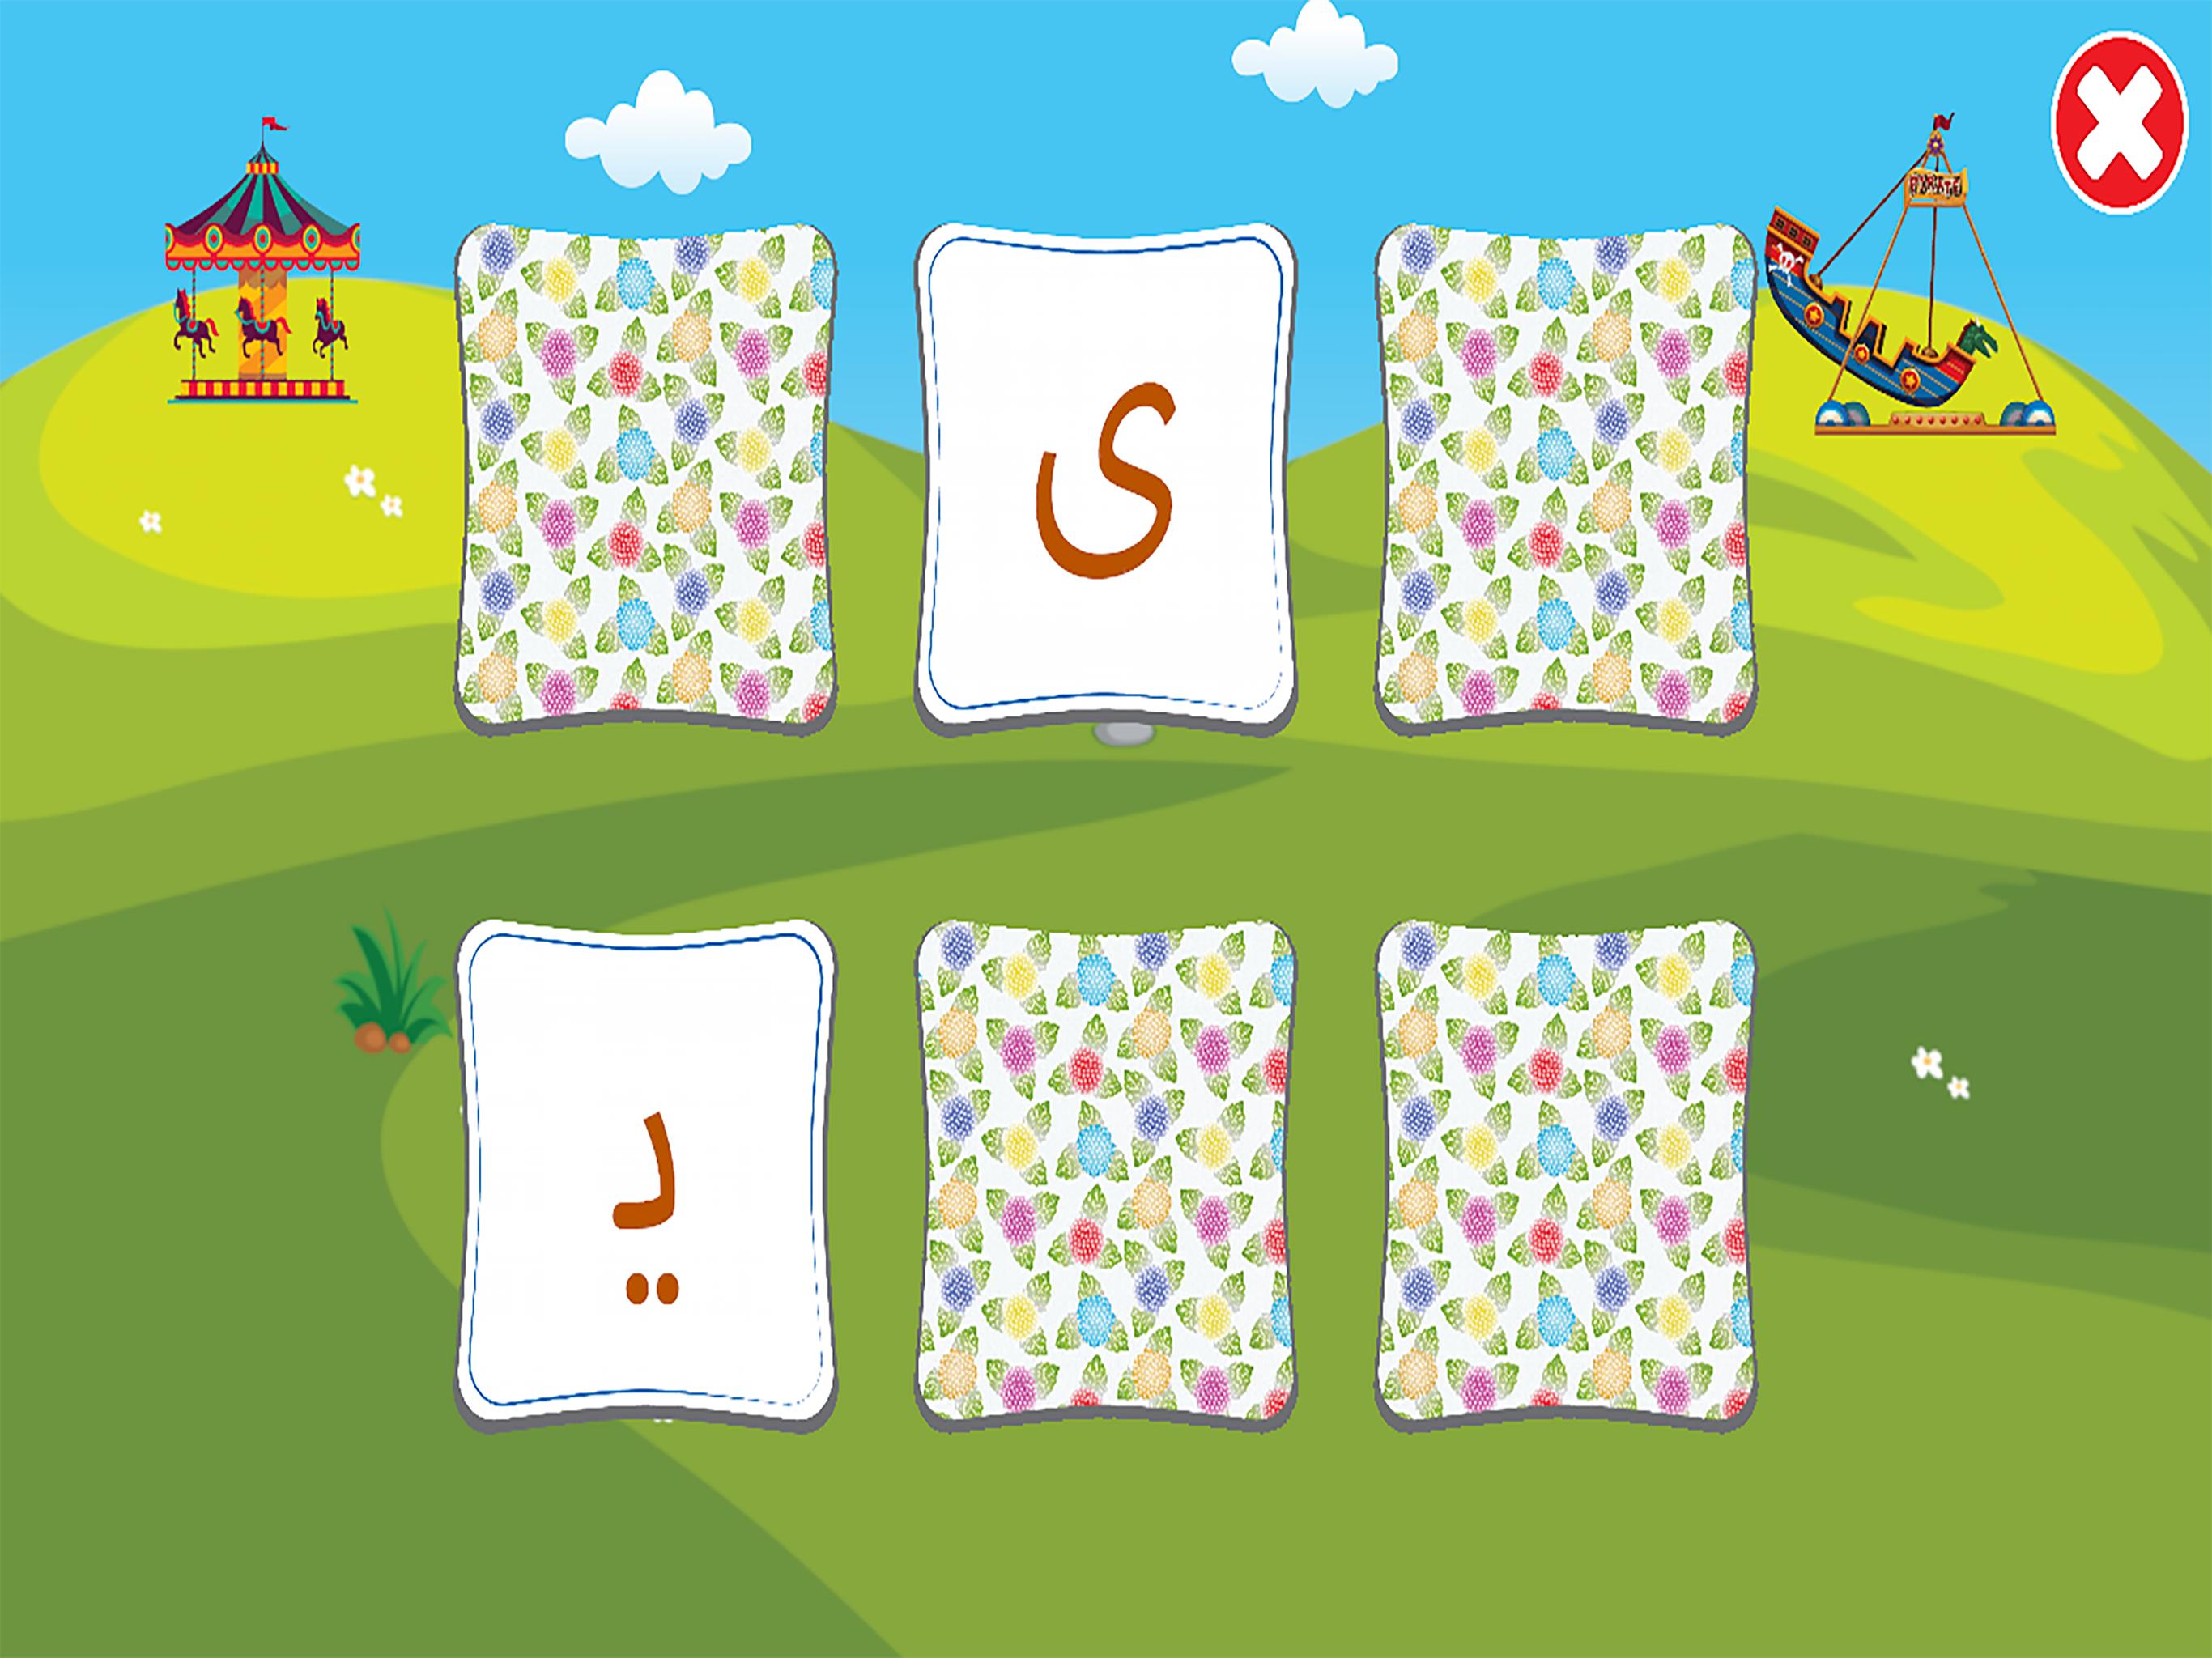 الفبای فارسی کودکان (Farsi alphabet game) 1.11.2 Screenshot 14